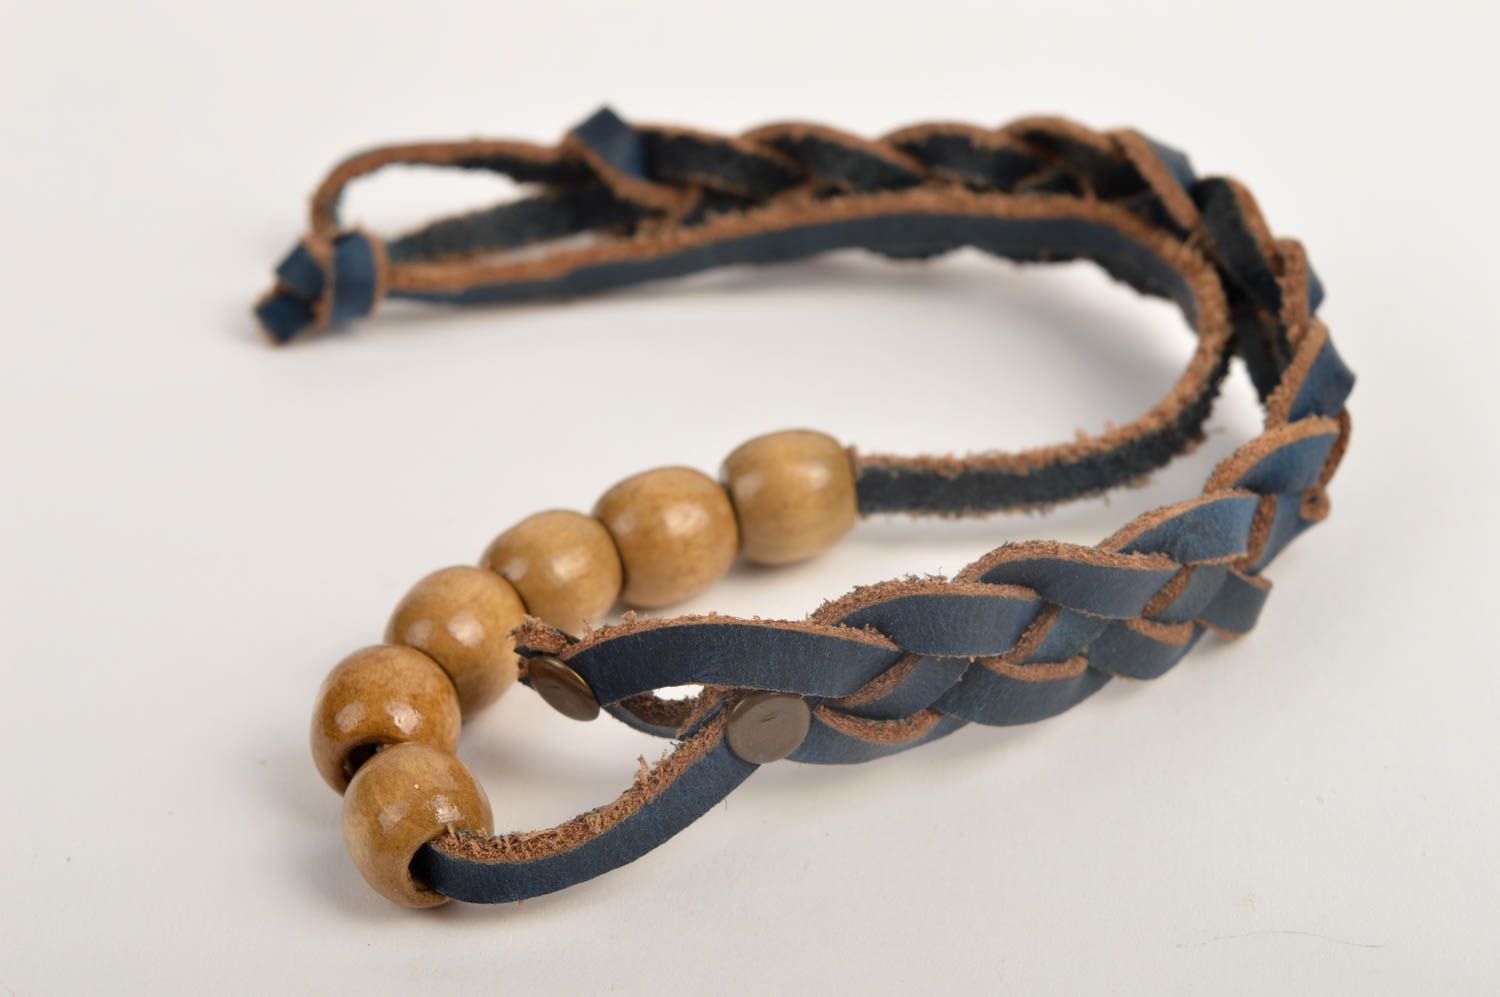 Handmade bracelet designer accessory gift ideas leather bracelet for women photo 4